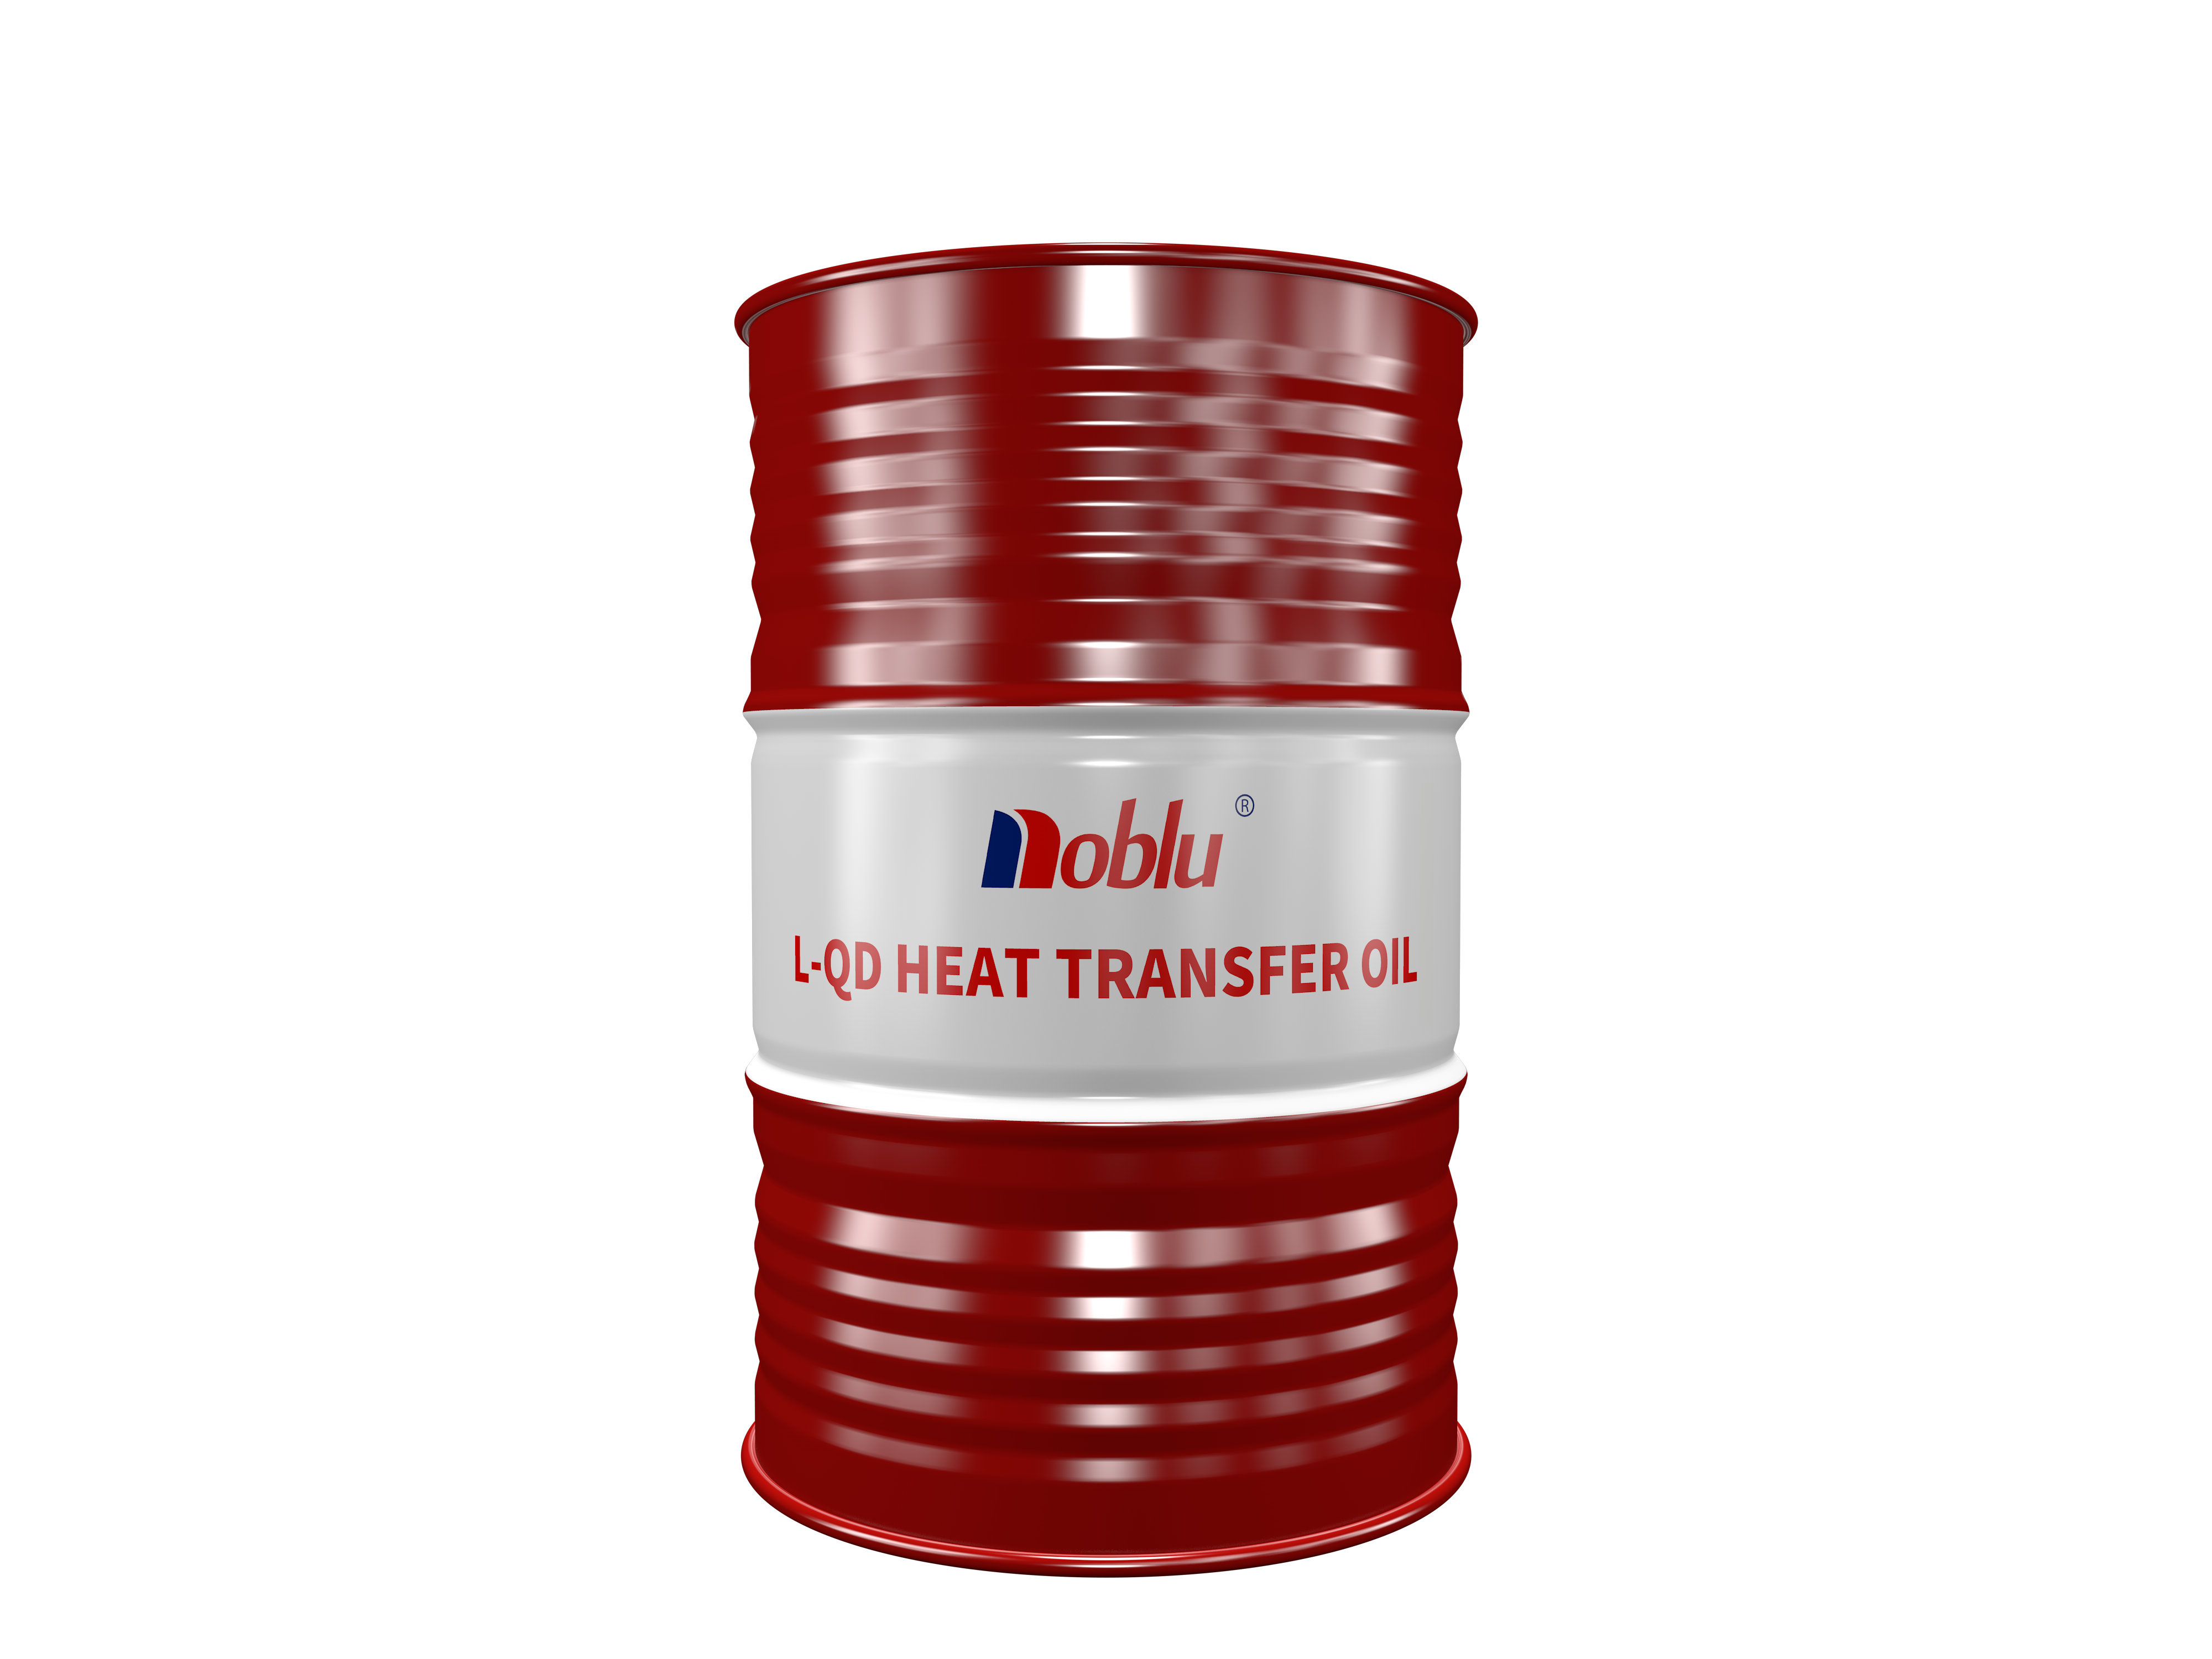 L-QD heat transfer oil